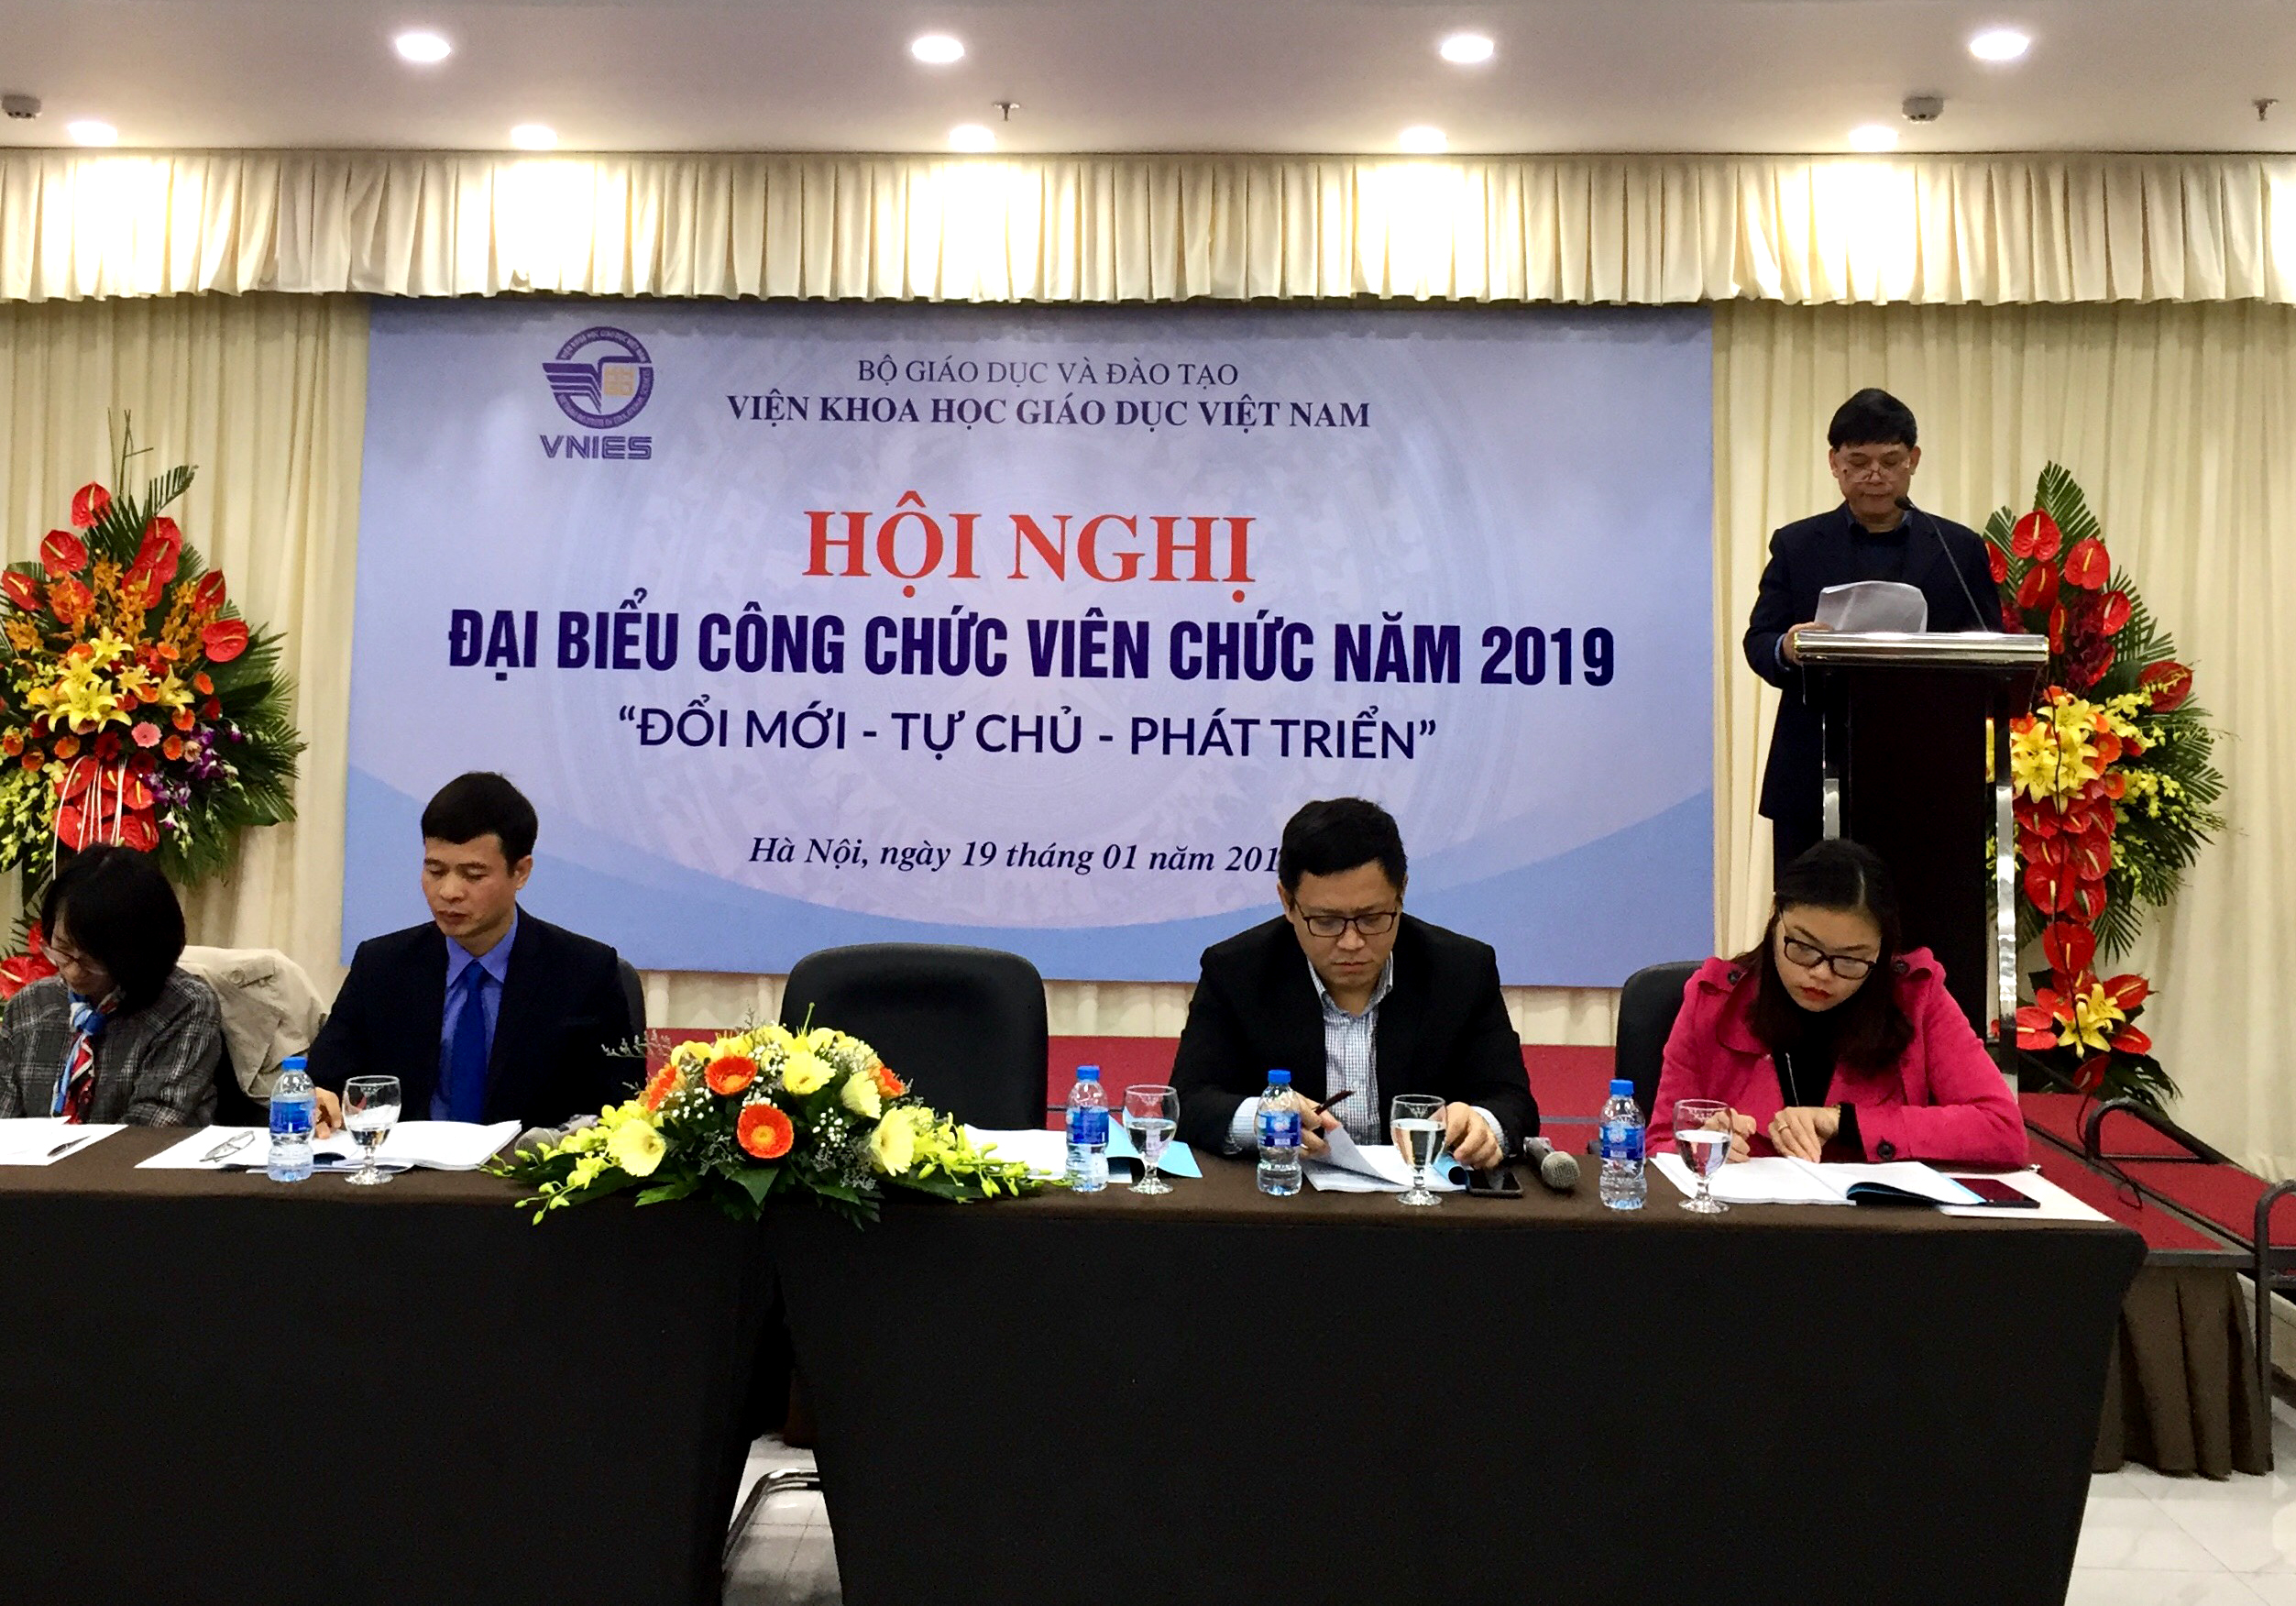 Hội nghị Đại biểu công chức, viên chức Viện Khoa học Giáo dục Việt Nam năm 2019 “Đổi mới – Tự chủ - Phát triển”